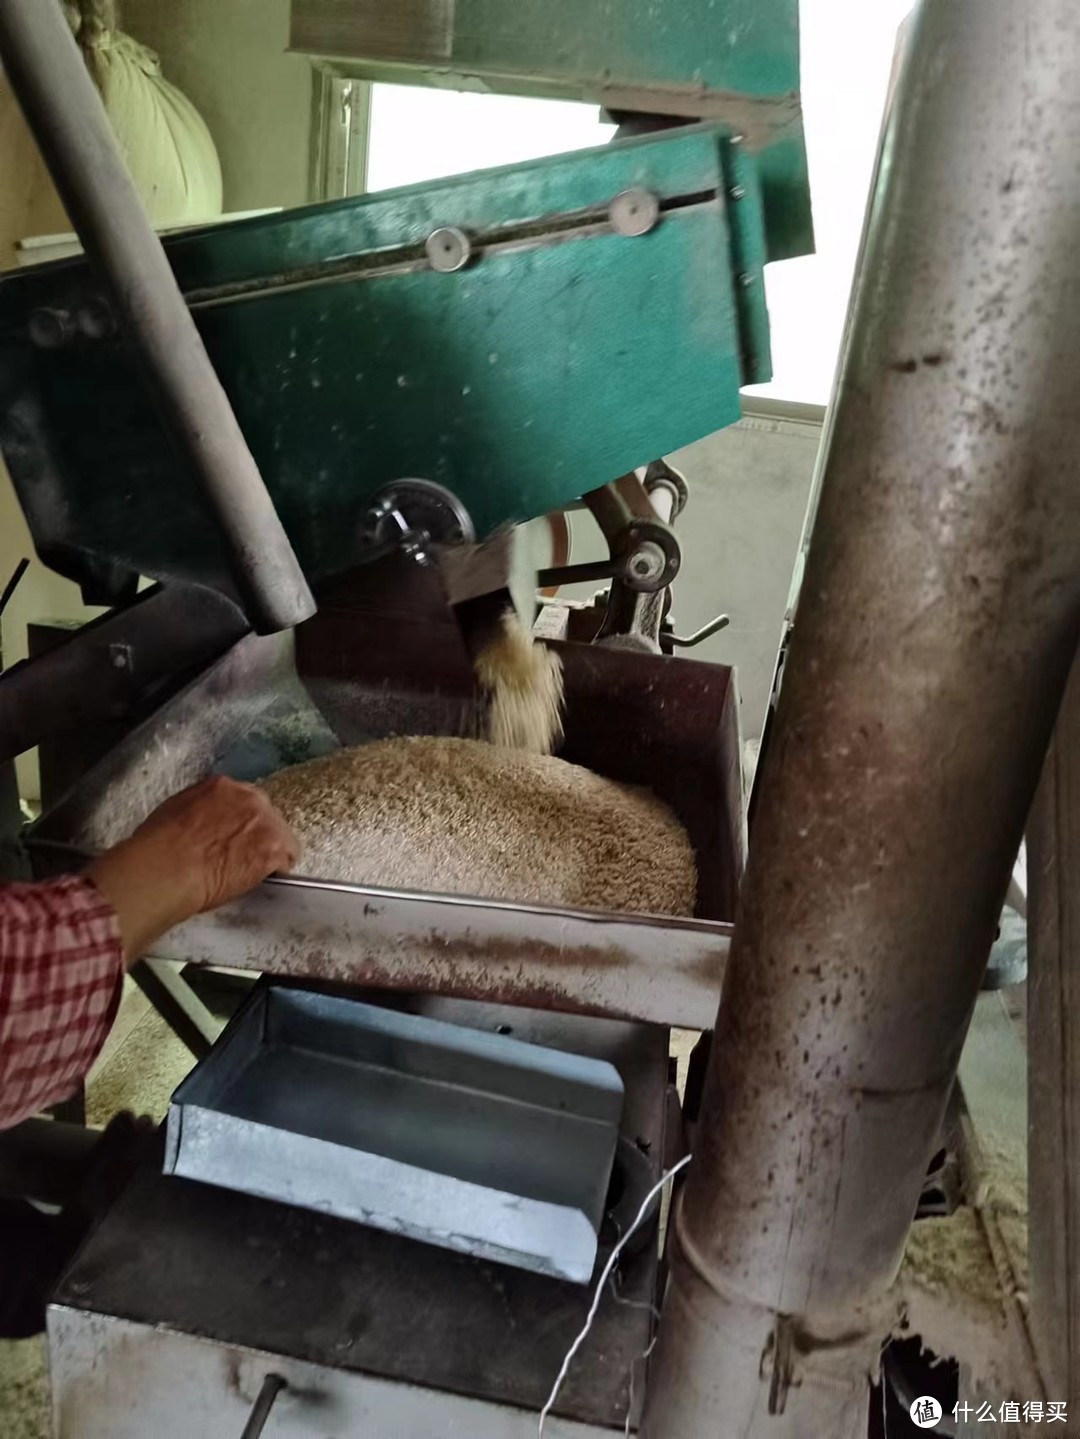 见过碾米机碾米的过程吗？